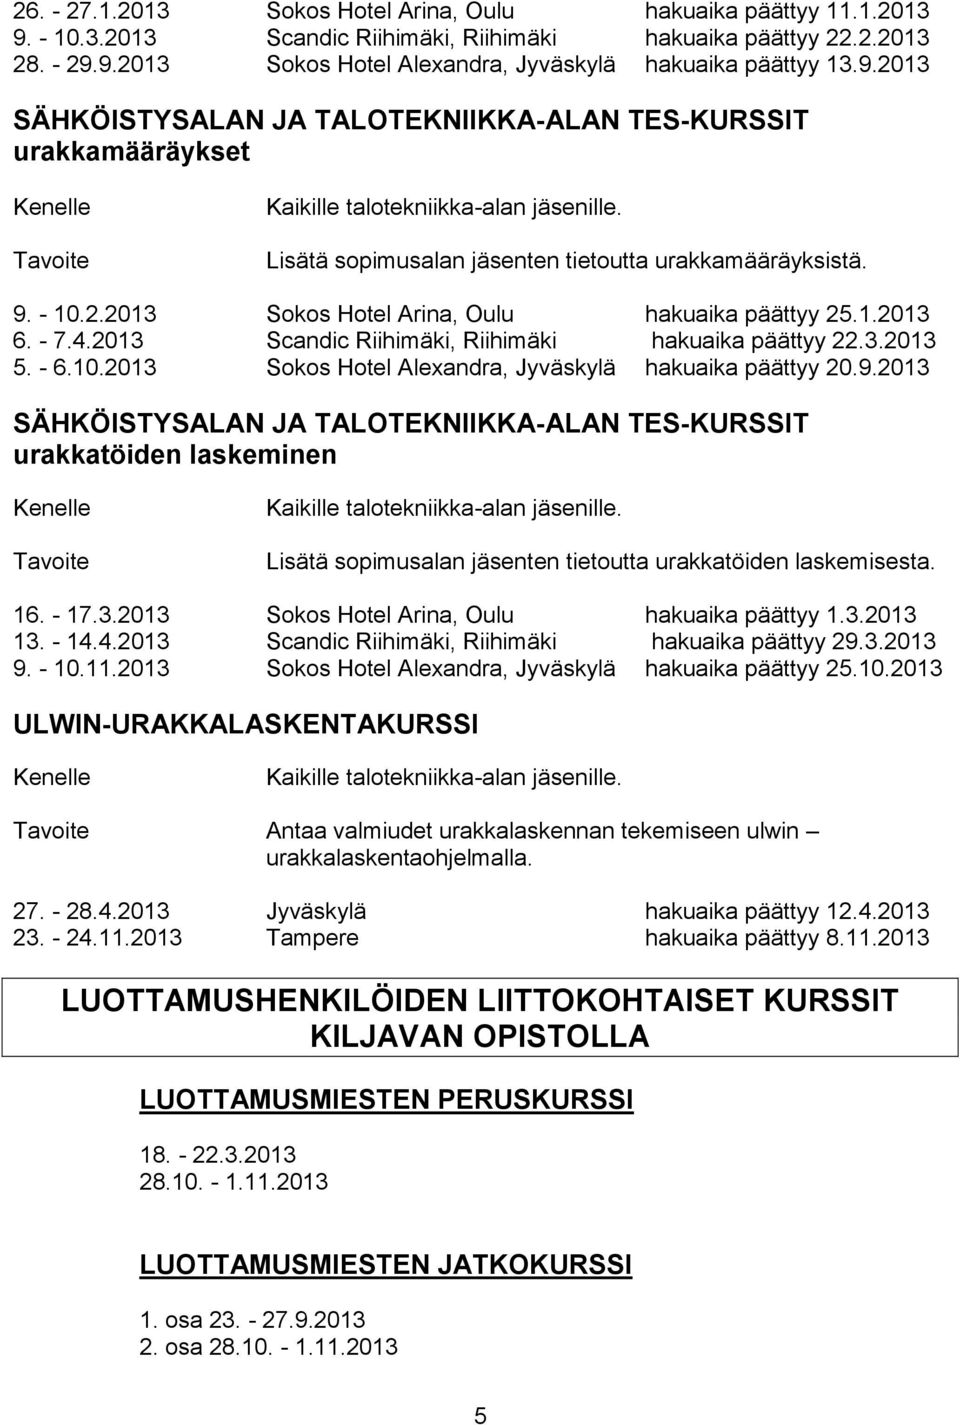 1.2013 6. - 7.4.2013 Scandic Riihimäki, Riihimäki hakuaika päättyy 22.3.2013 5. - 6.10.2013 Sokos Hotel Alexandra, Jyväskylä hakuaika päättyy 20.9.